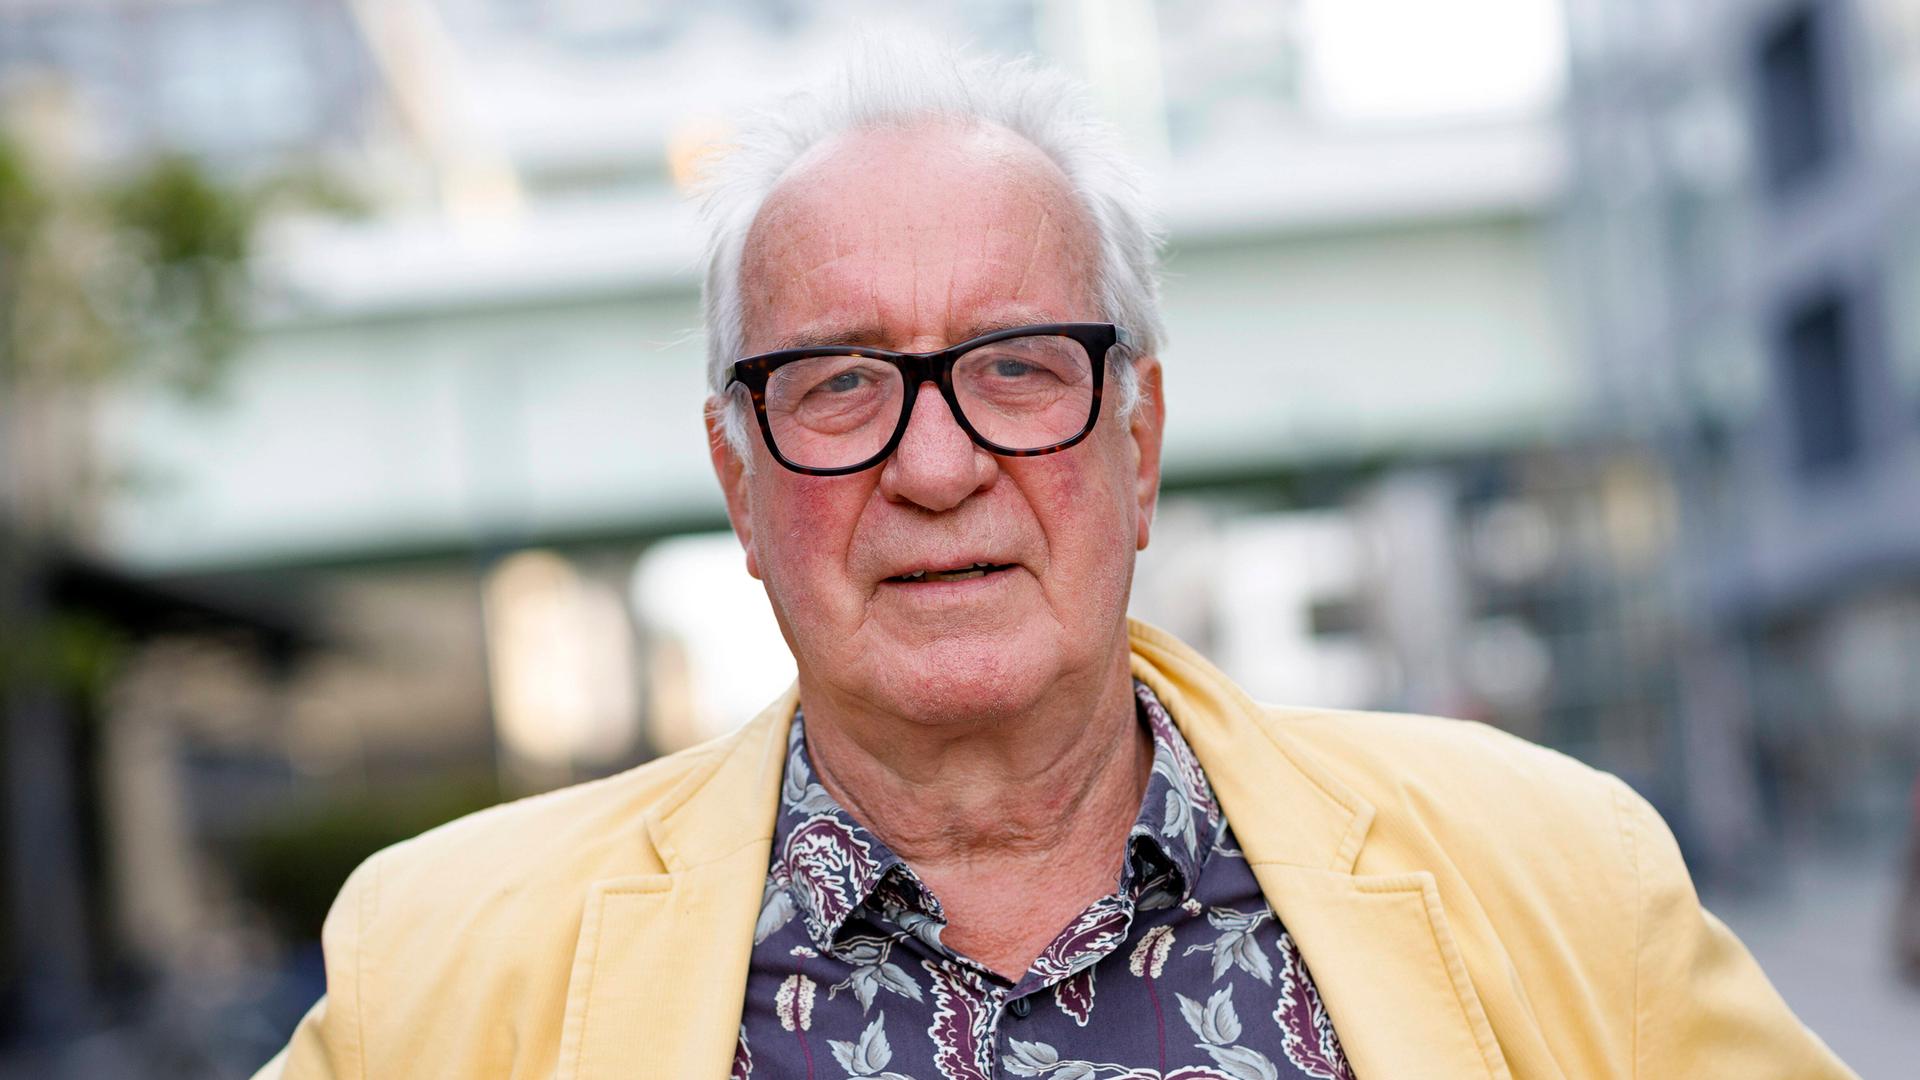 Porträt von Martin Stankowski auf der phil.COLOGNE, dem internationalen Festival für Philosophie in Köln am 14.09.2020. Er trägt eine Brille und ein gelbes Sacko.